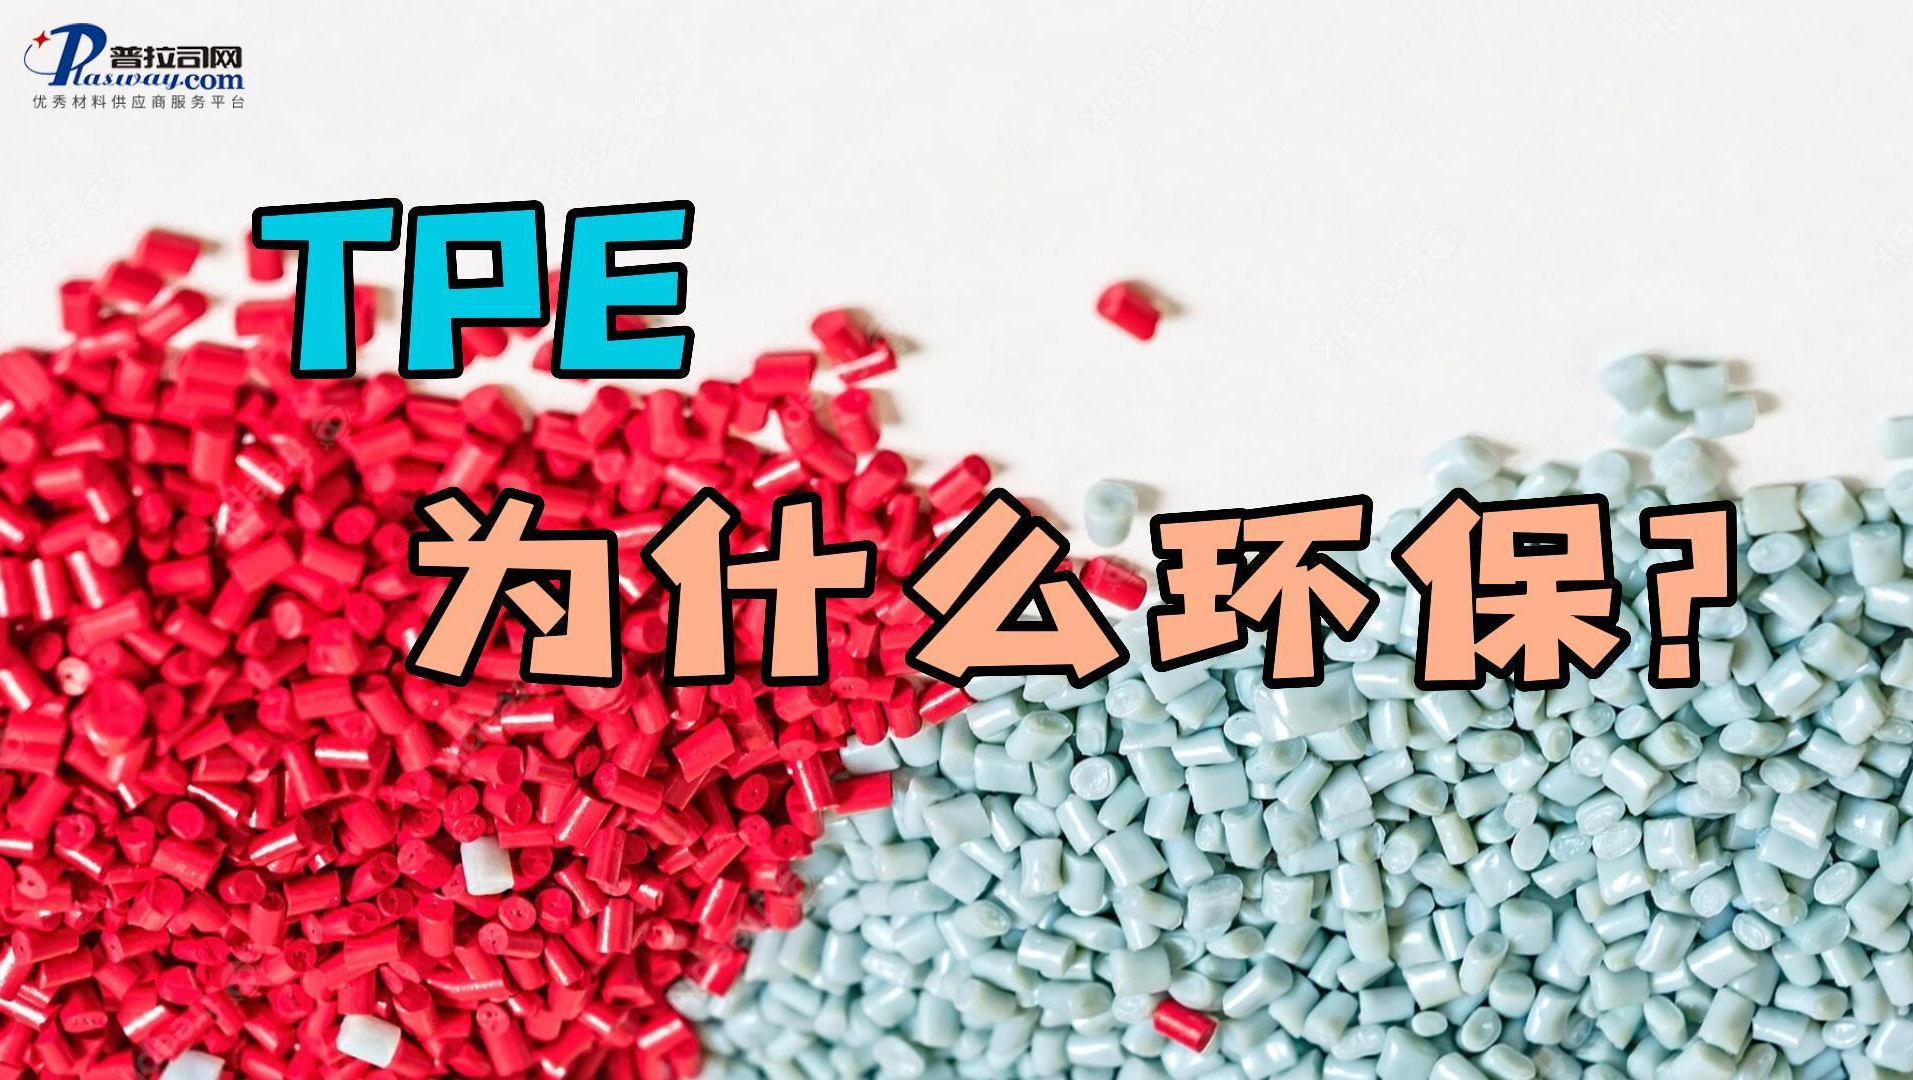 弹性体TPE为什么比PVC和硅胶更环保？